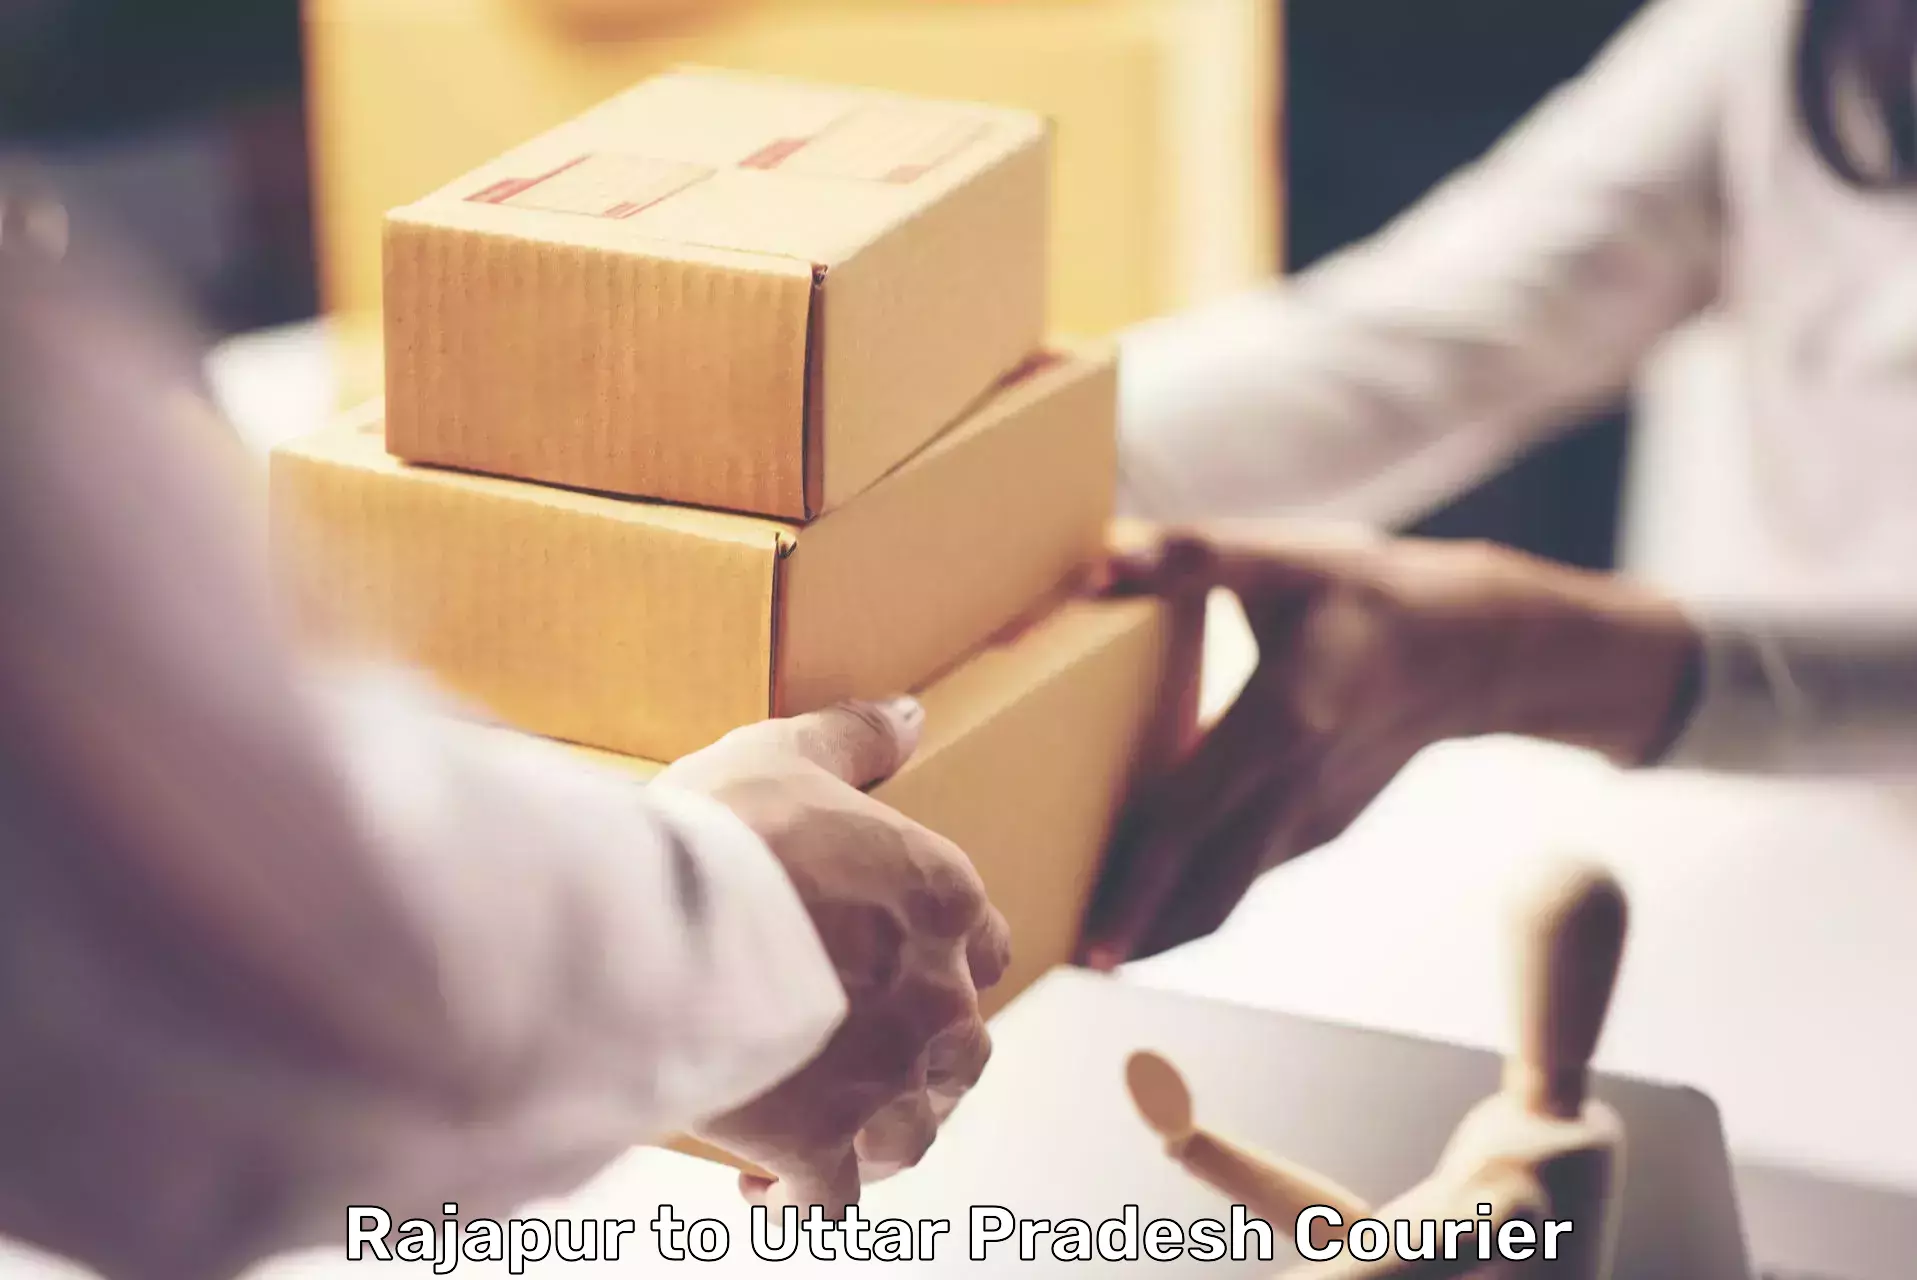 International parcel service Rajapur to Dadri